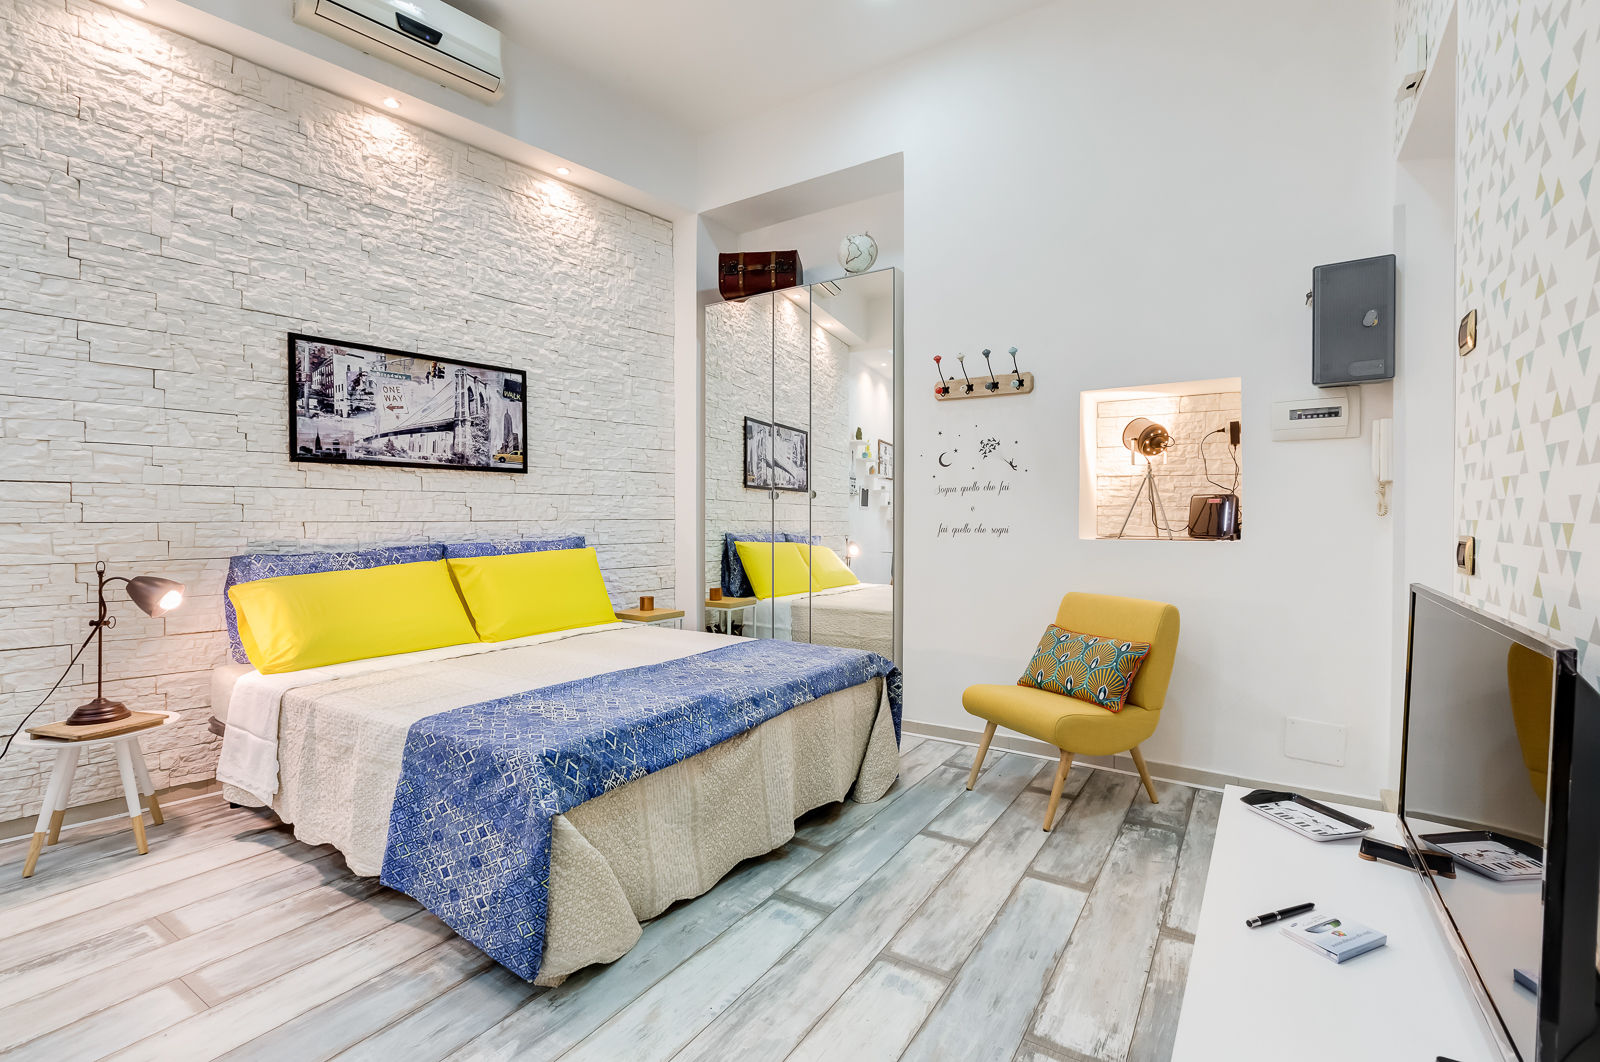 Mini Appartamento Turistico - Roma, Luca Tranquilli - Fotografo Luca Tranquilli - Fotografo غرفة نوم